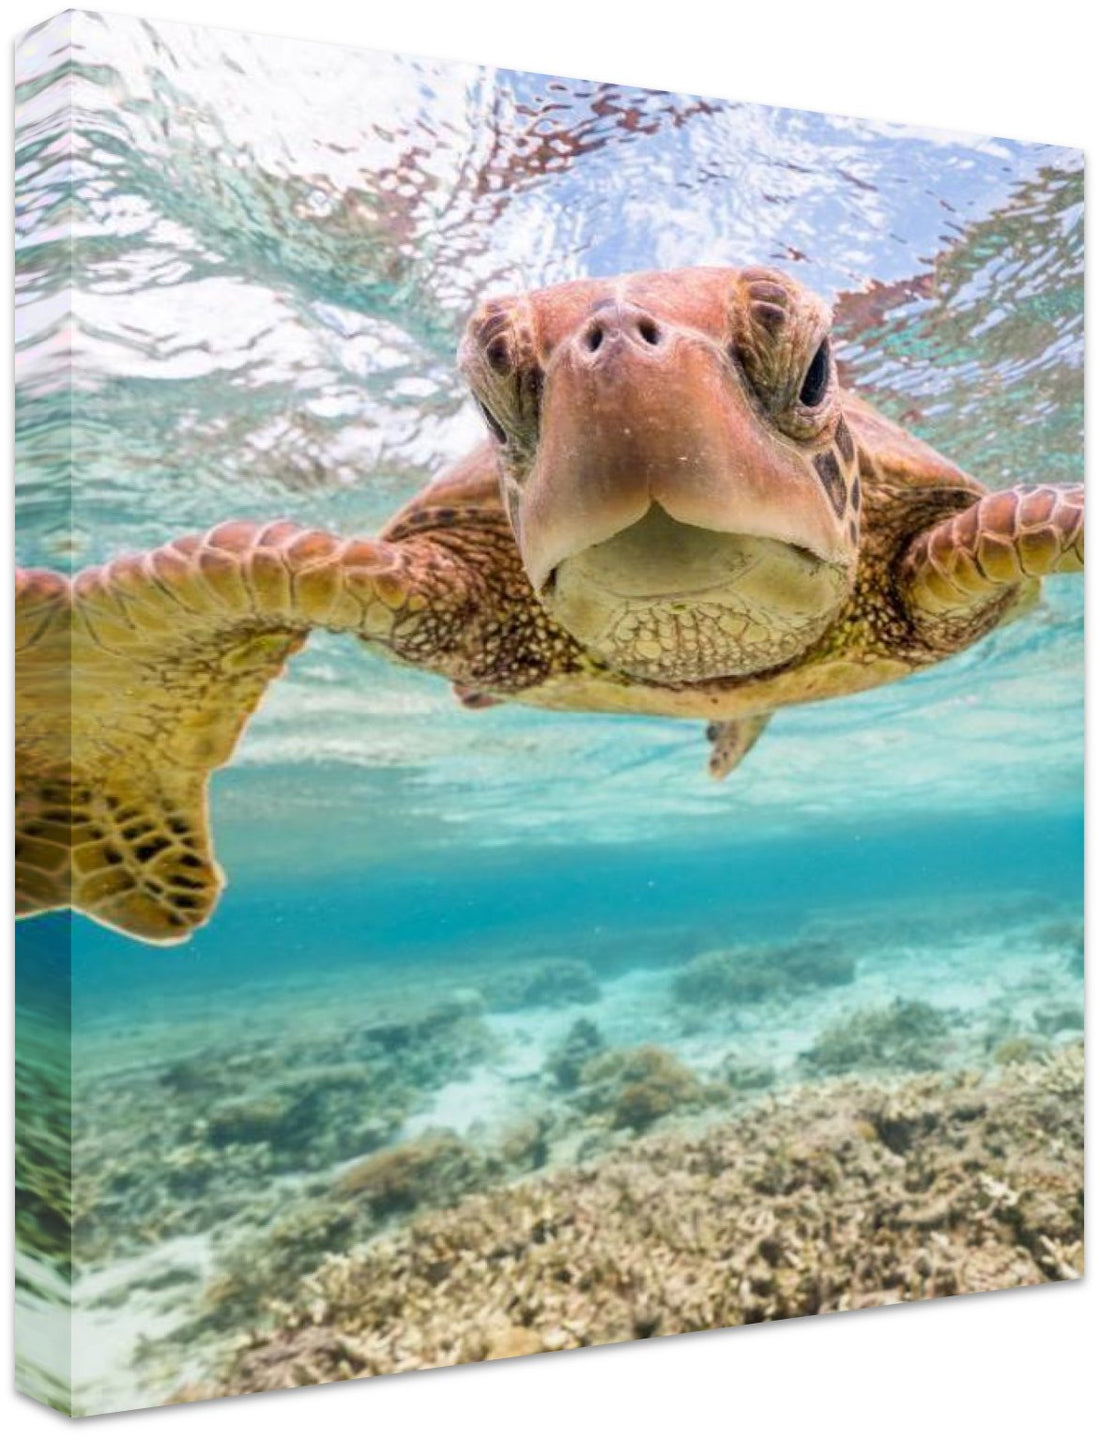 Turtle Selfie